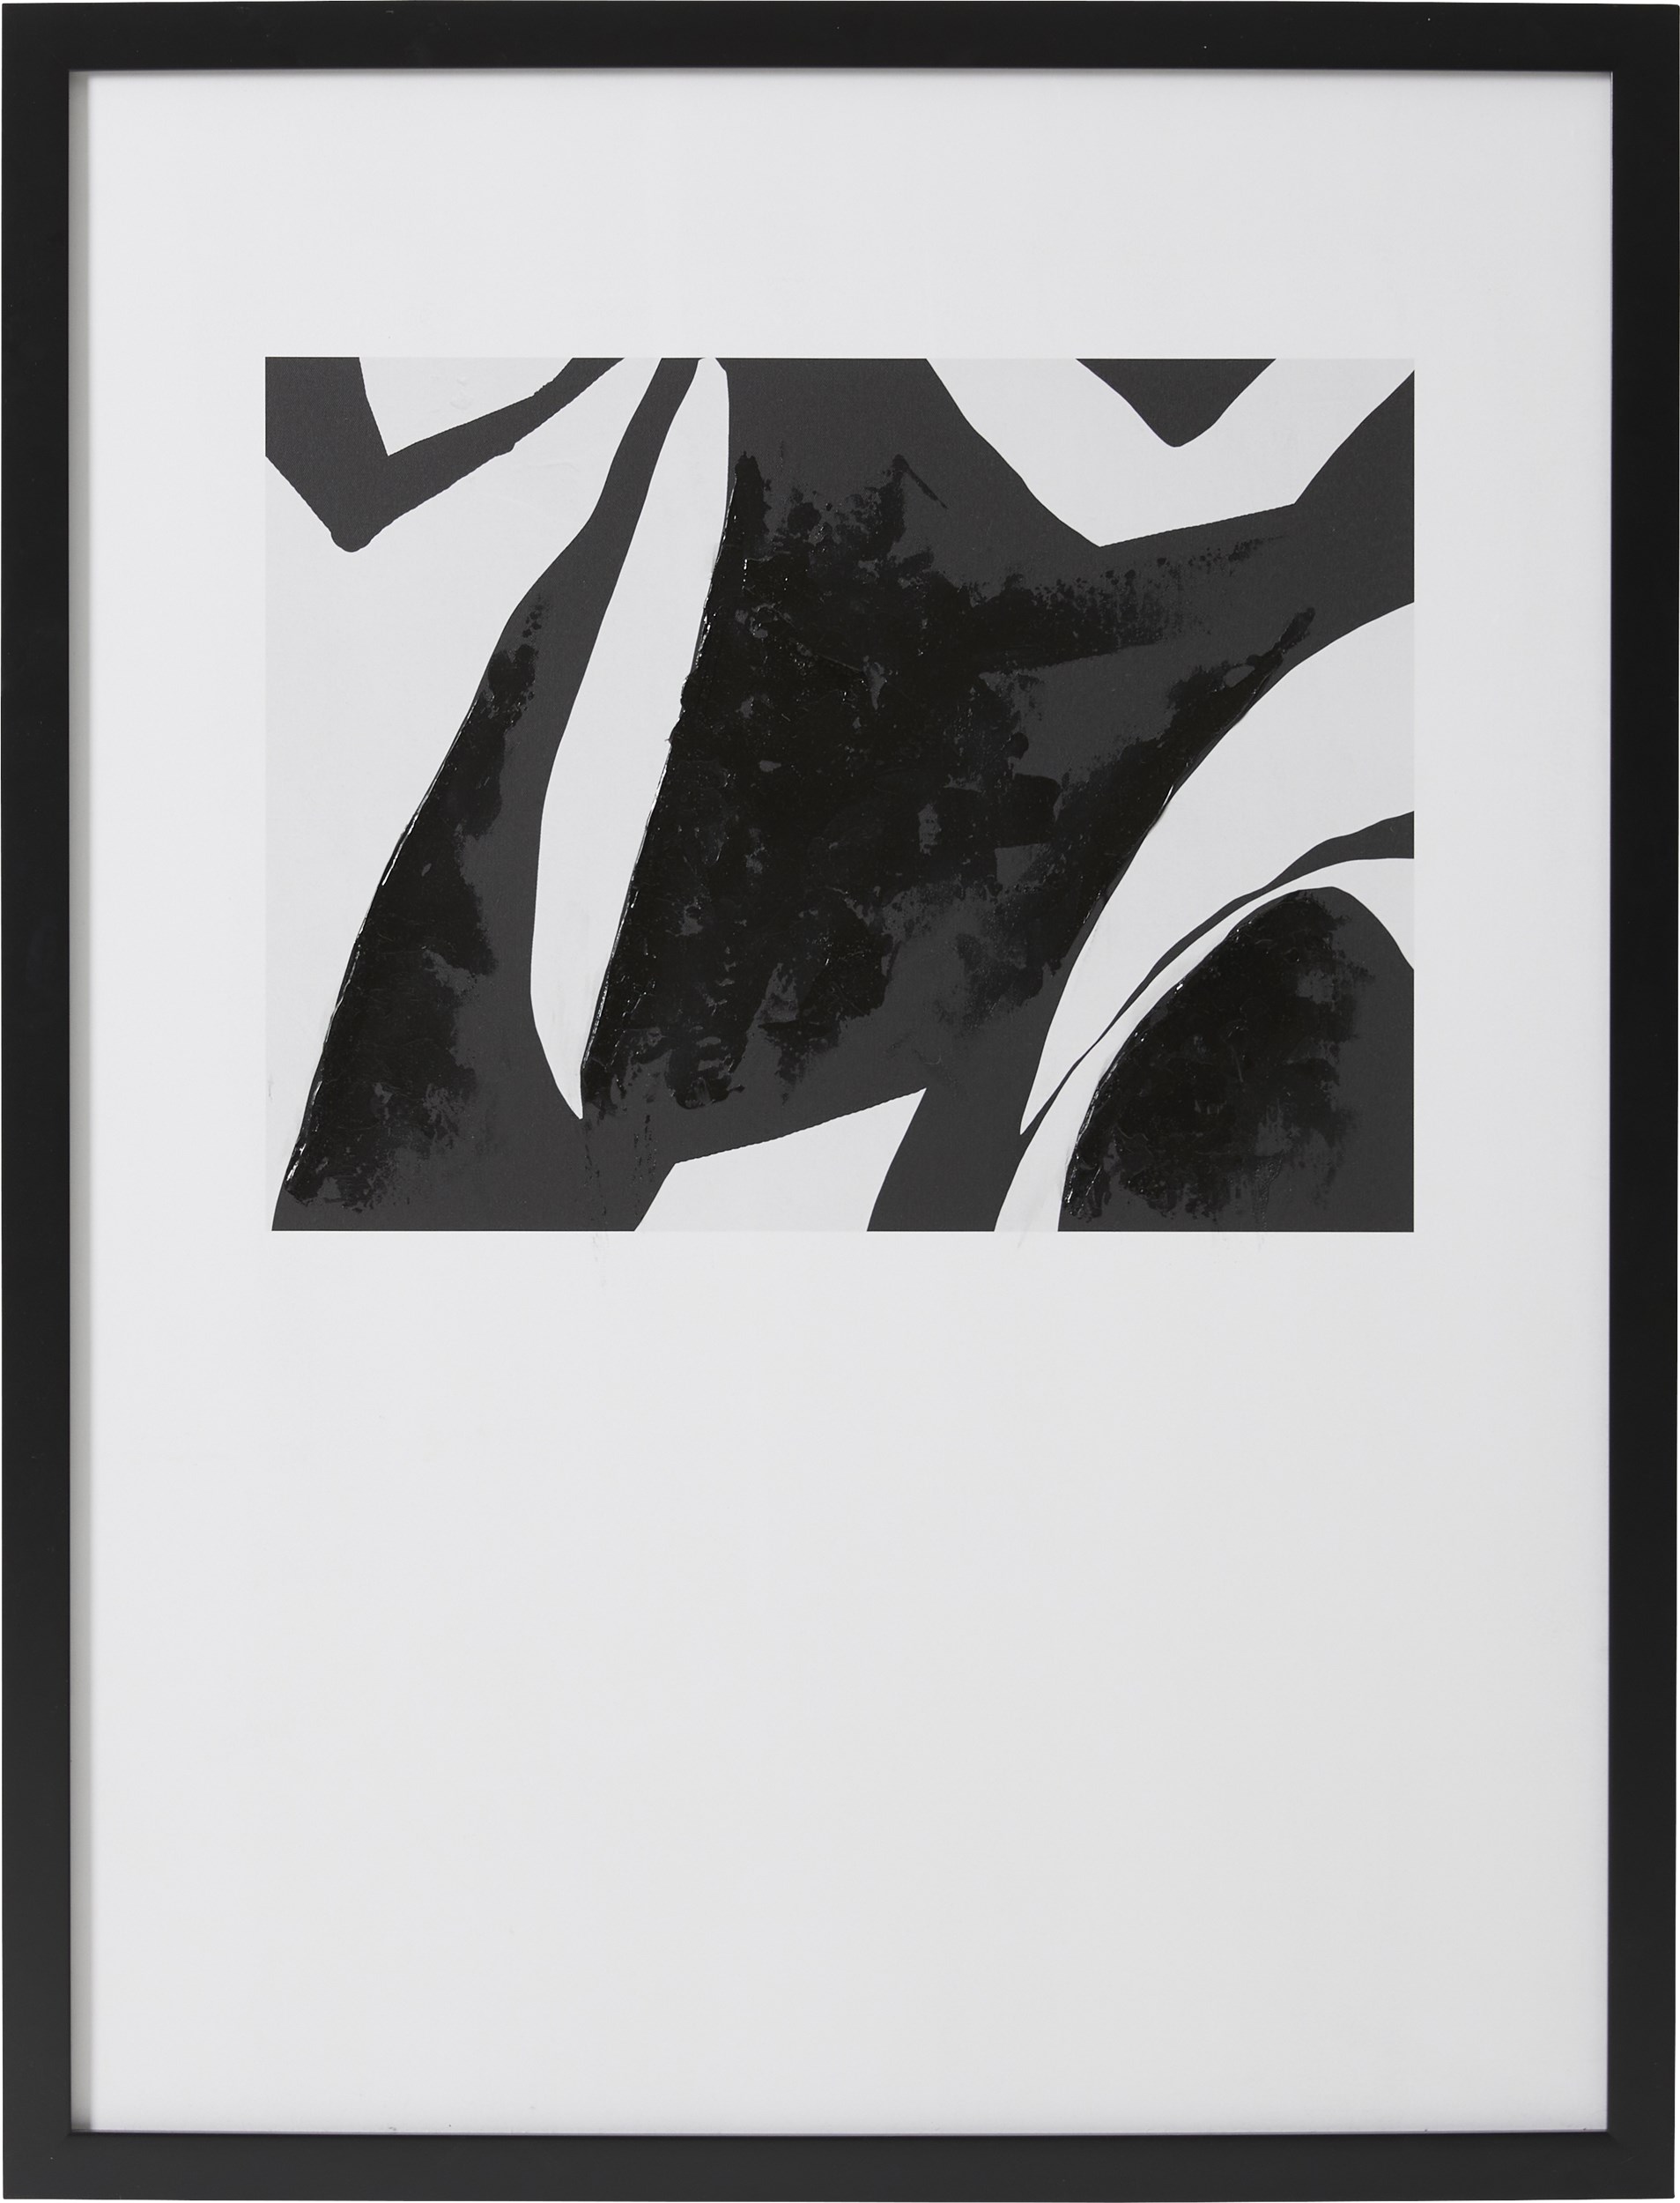 Eydis Fotoprint 126,6 x 96,6 x 3,5 cm 